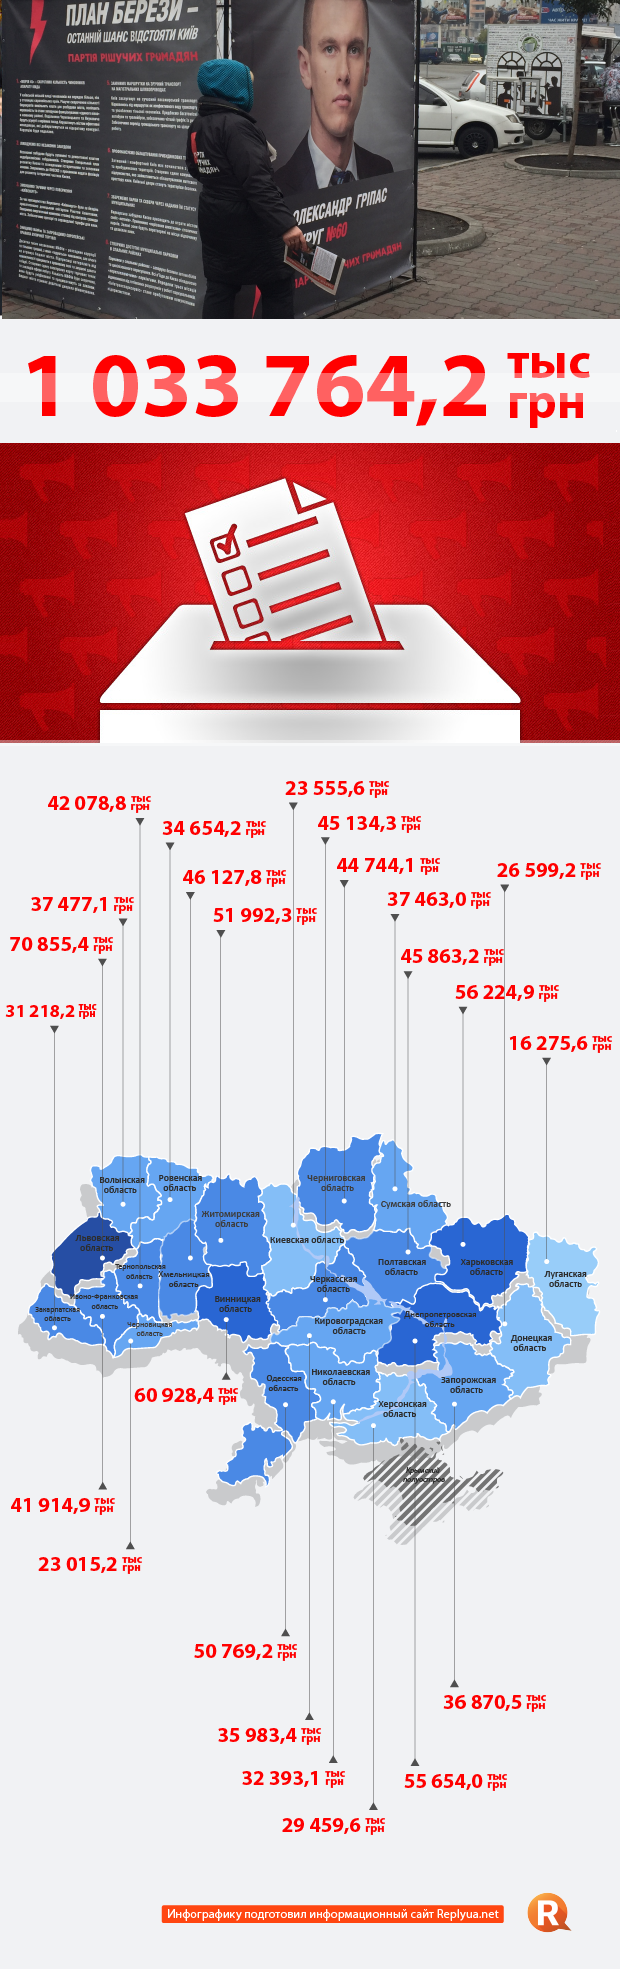 На предвыборную кампанию потрачено больше миллиарда гривен - инфографика